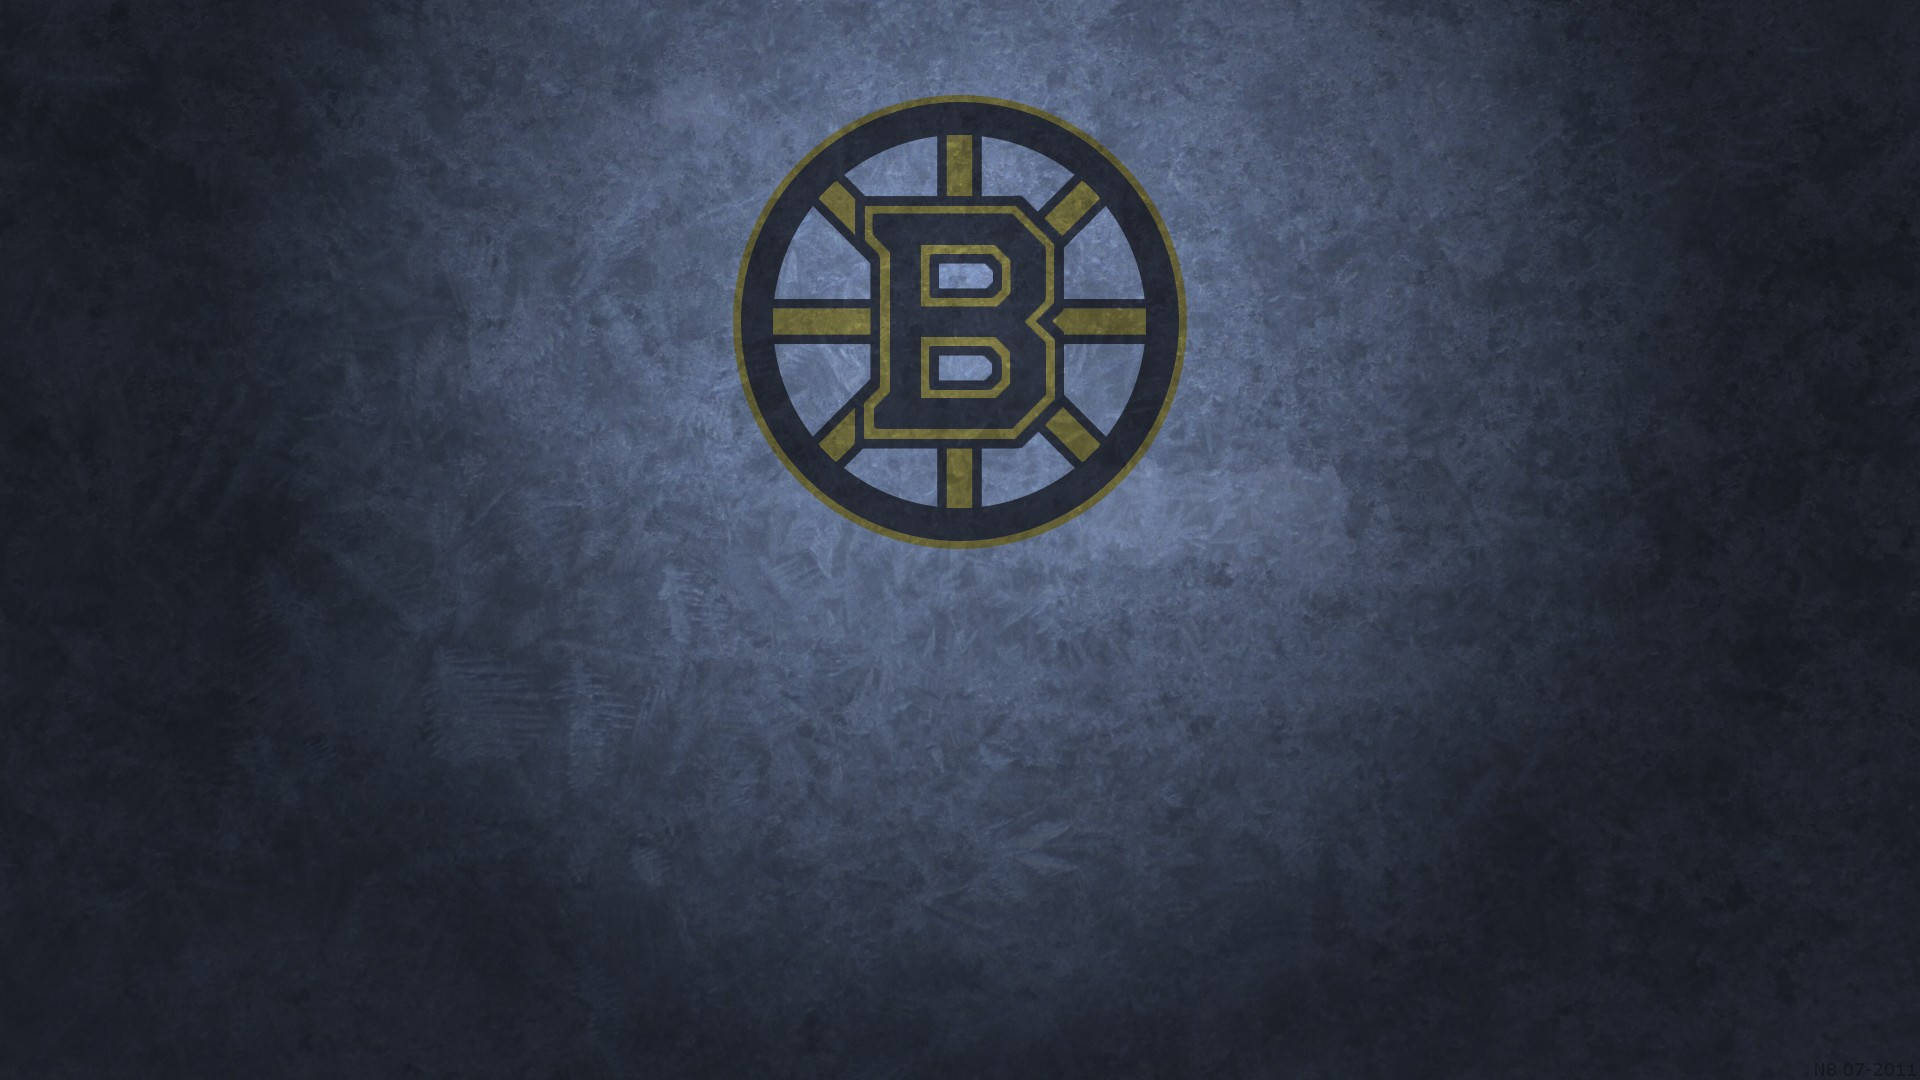 Boston Bruins Grunge Background